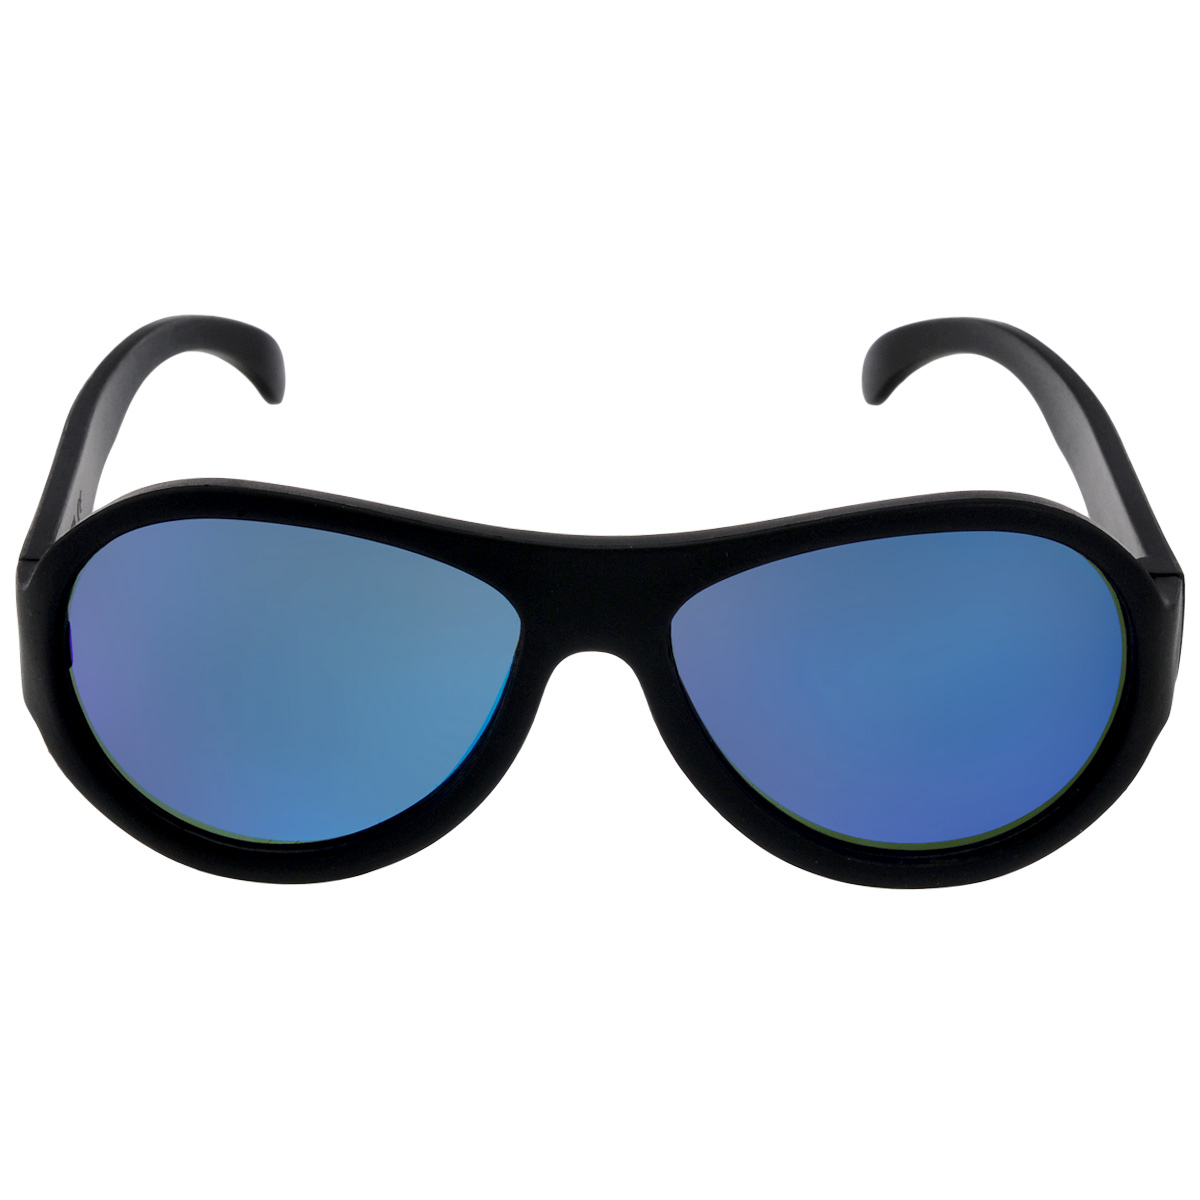 Детские солнцезащитные очки Babiators 